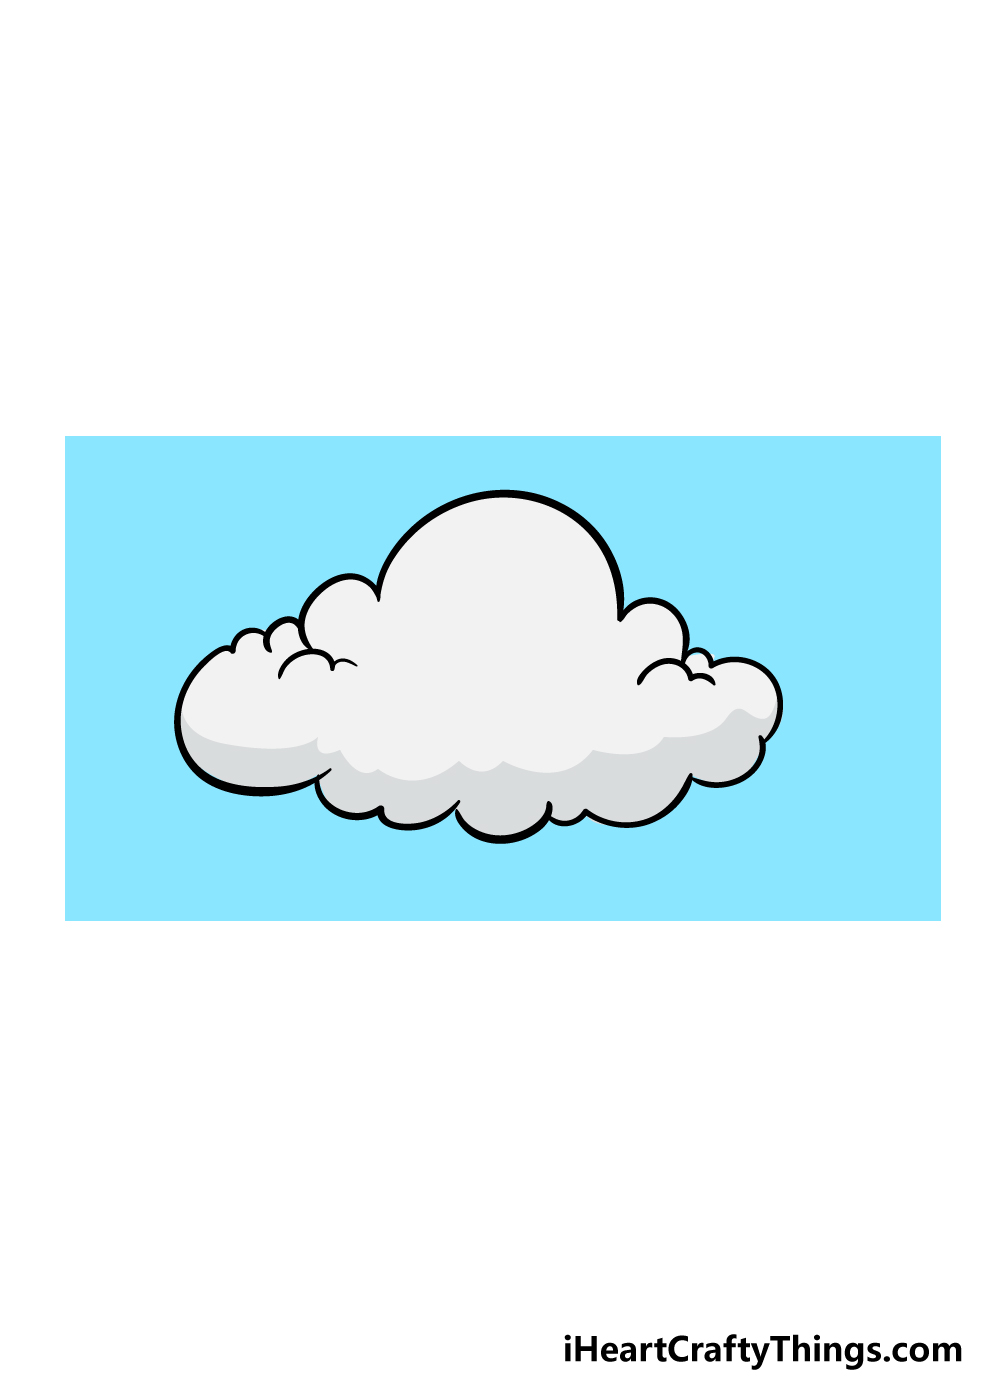 Cloud 6 1 - Hướng dẫn cách vẽ đám mây đơn giản với 6 bước cơ bản